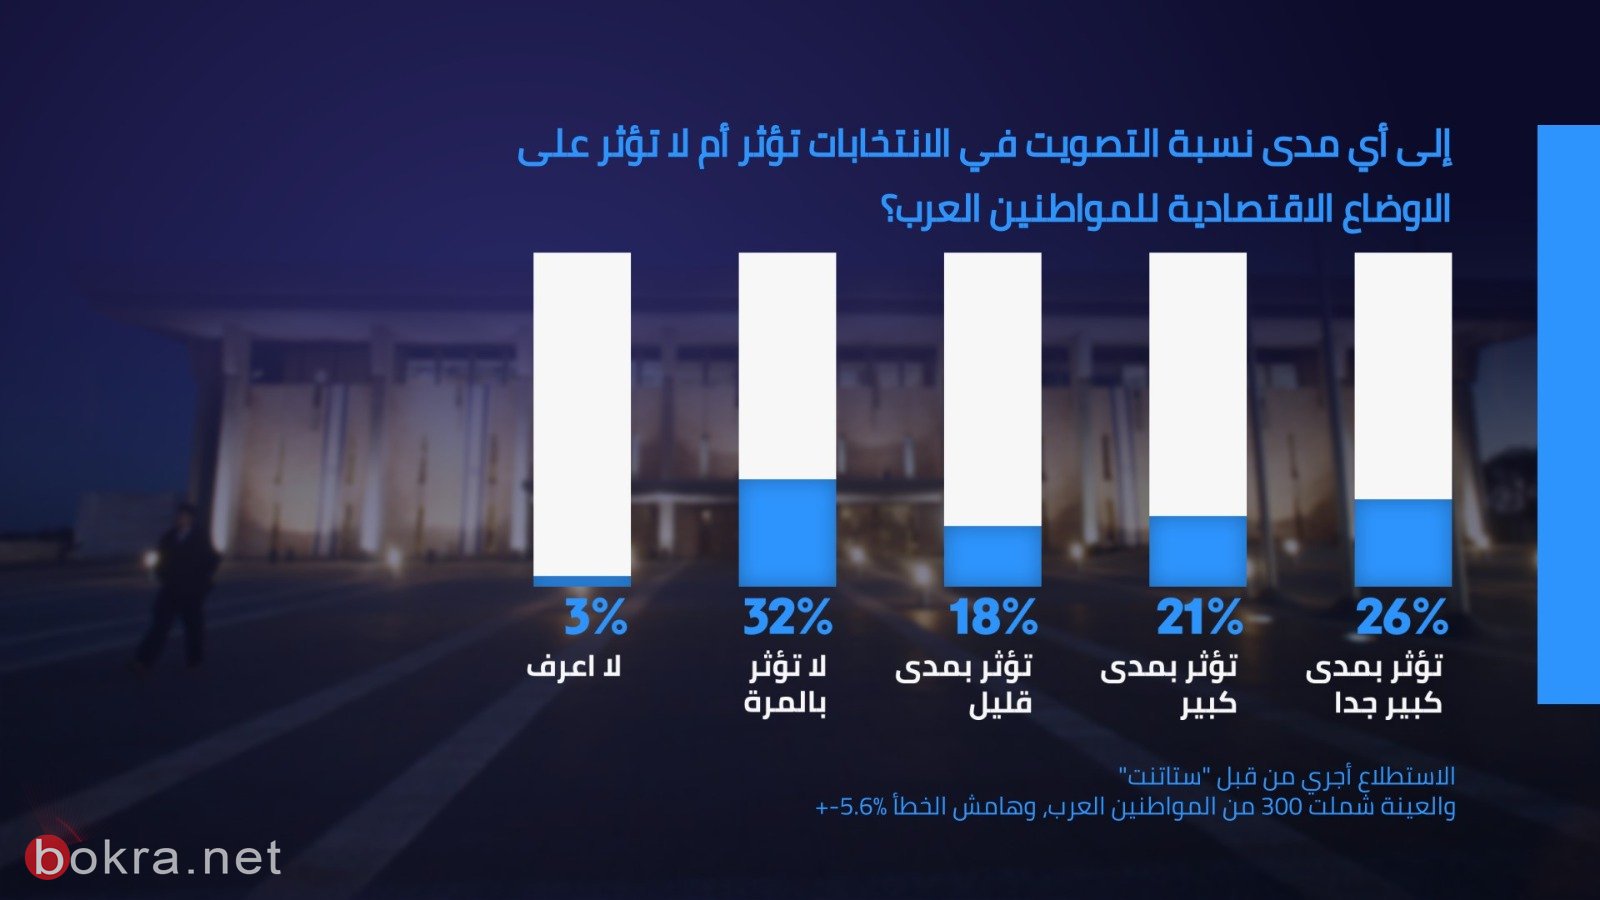 65% من العرب يؤيدون دخول الاحزاب العربية الى الائتلاف الحكومي-6